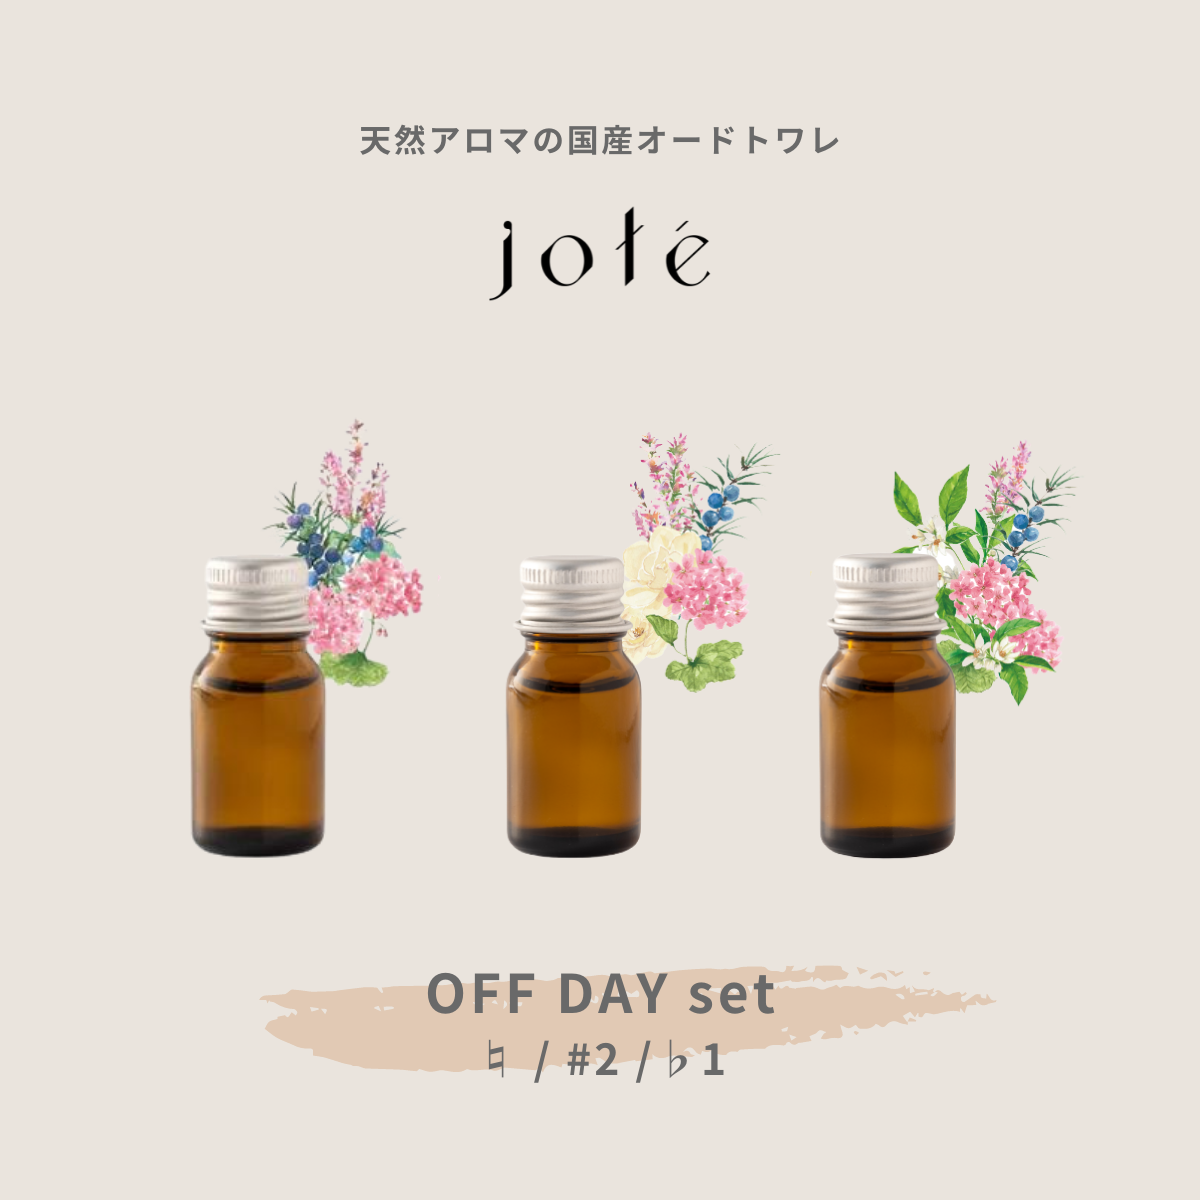 【 OFF DAY set 】Perfume 気分によって使い分けるお試し5ml 3本セット